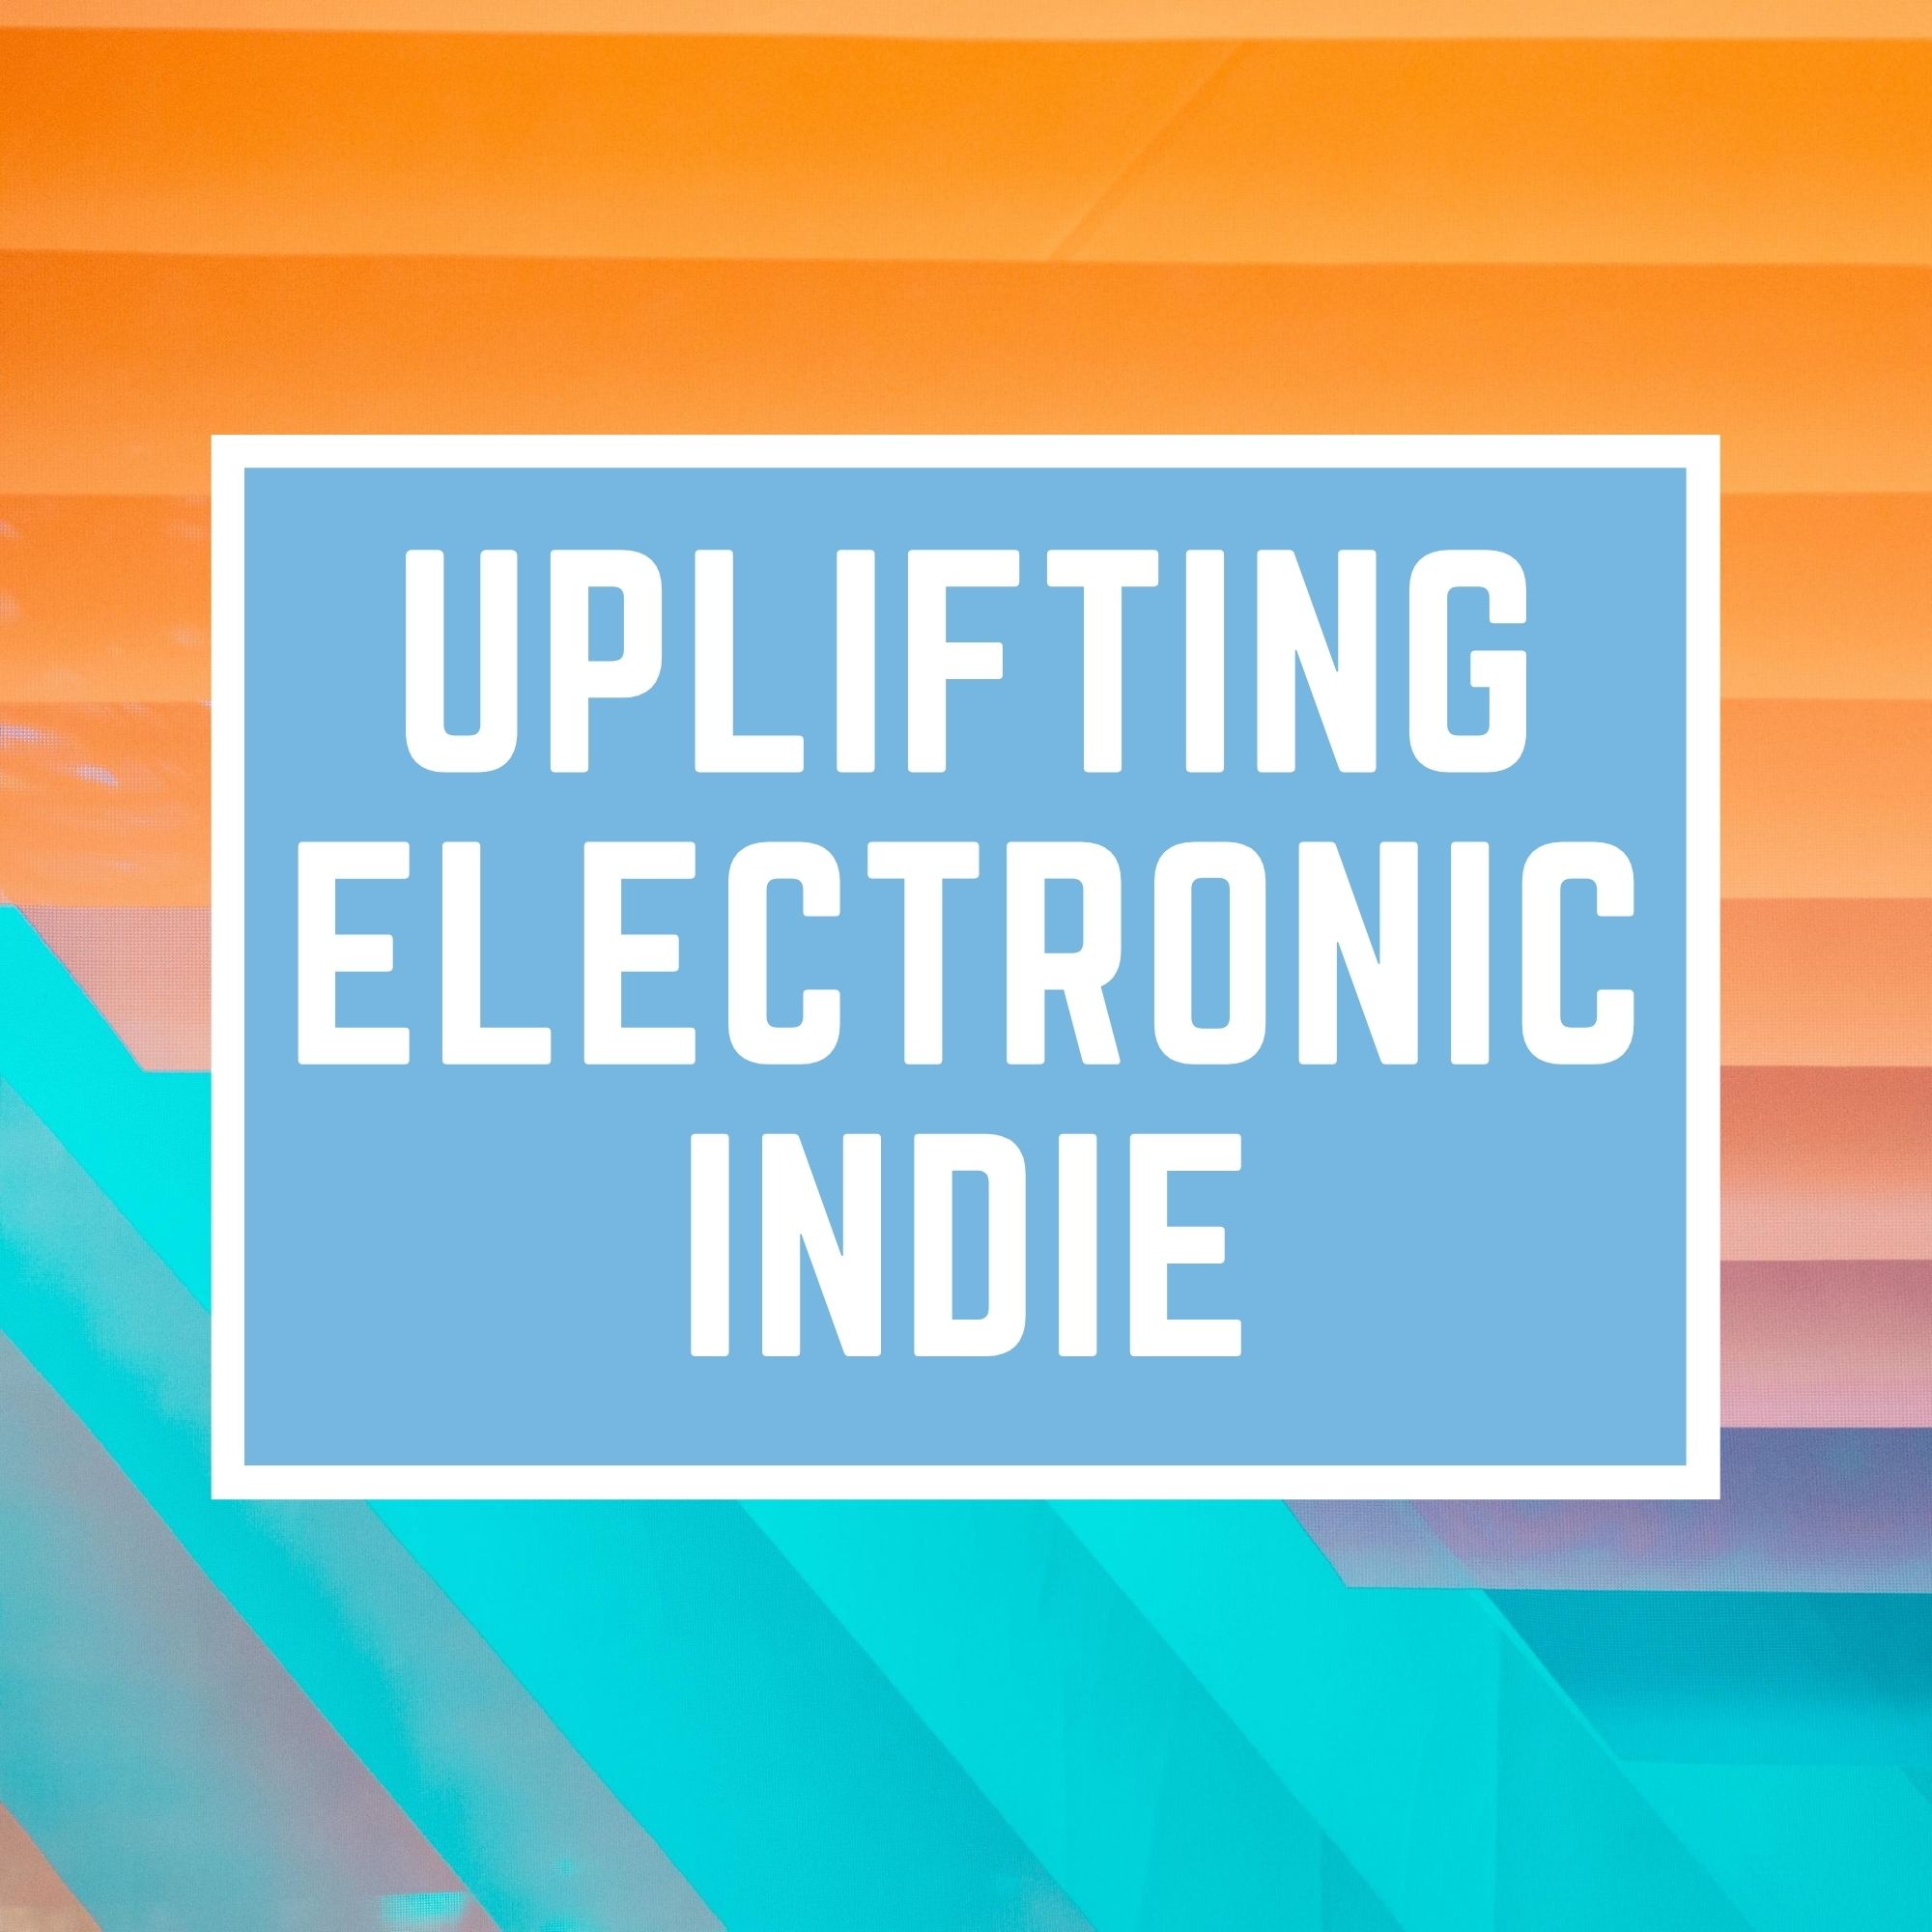 Uplifting Electronic Indie